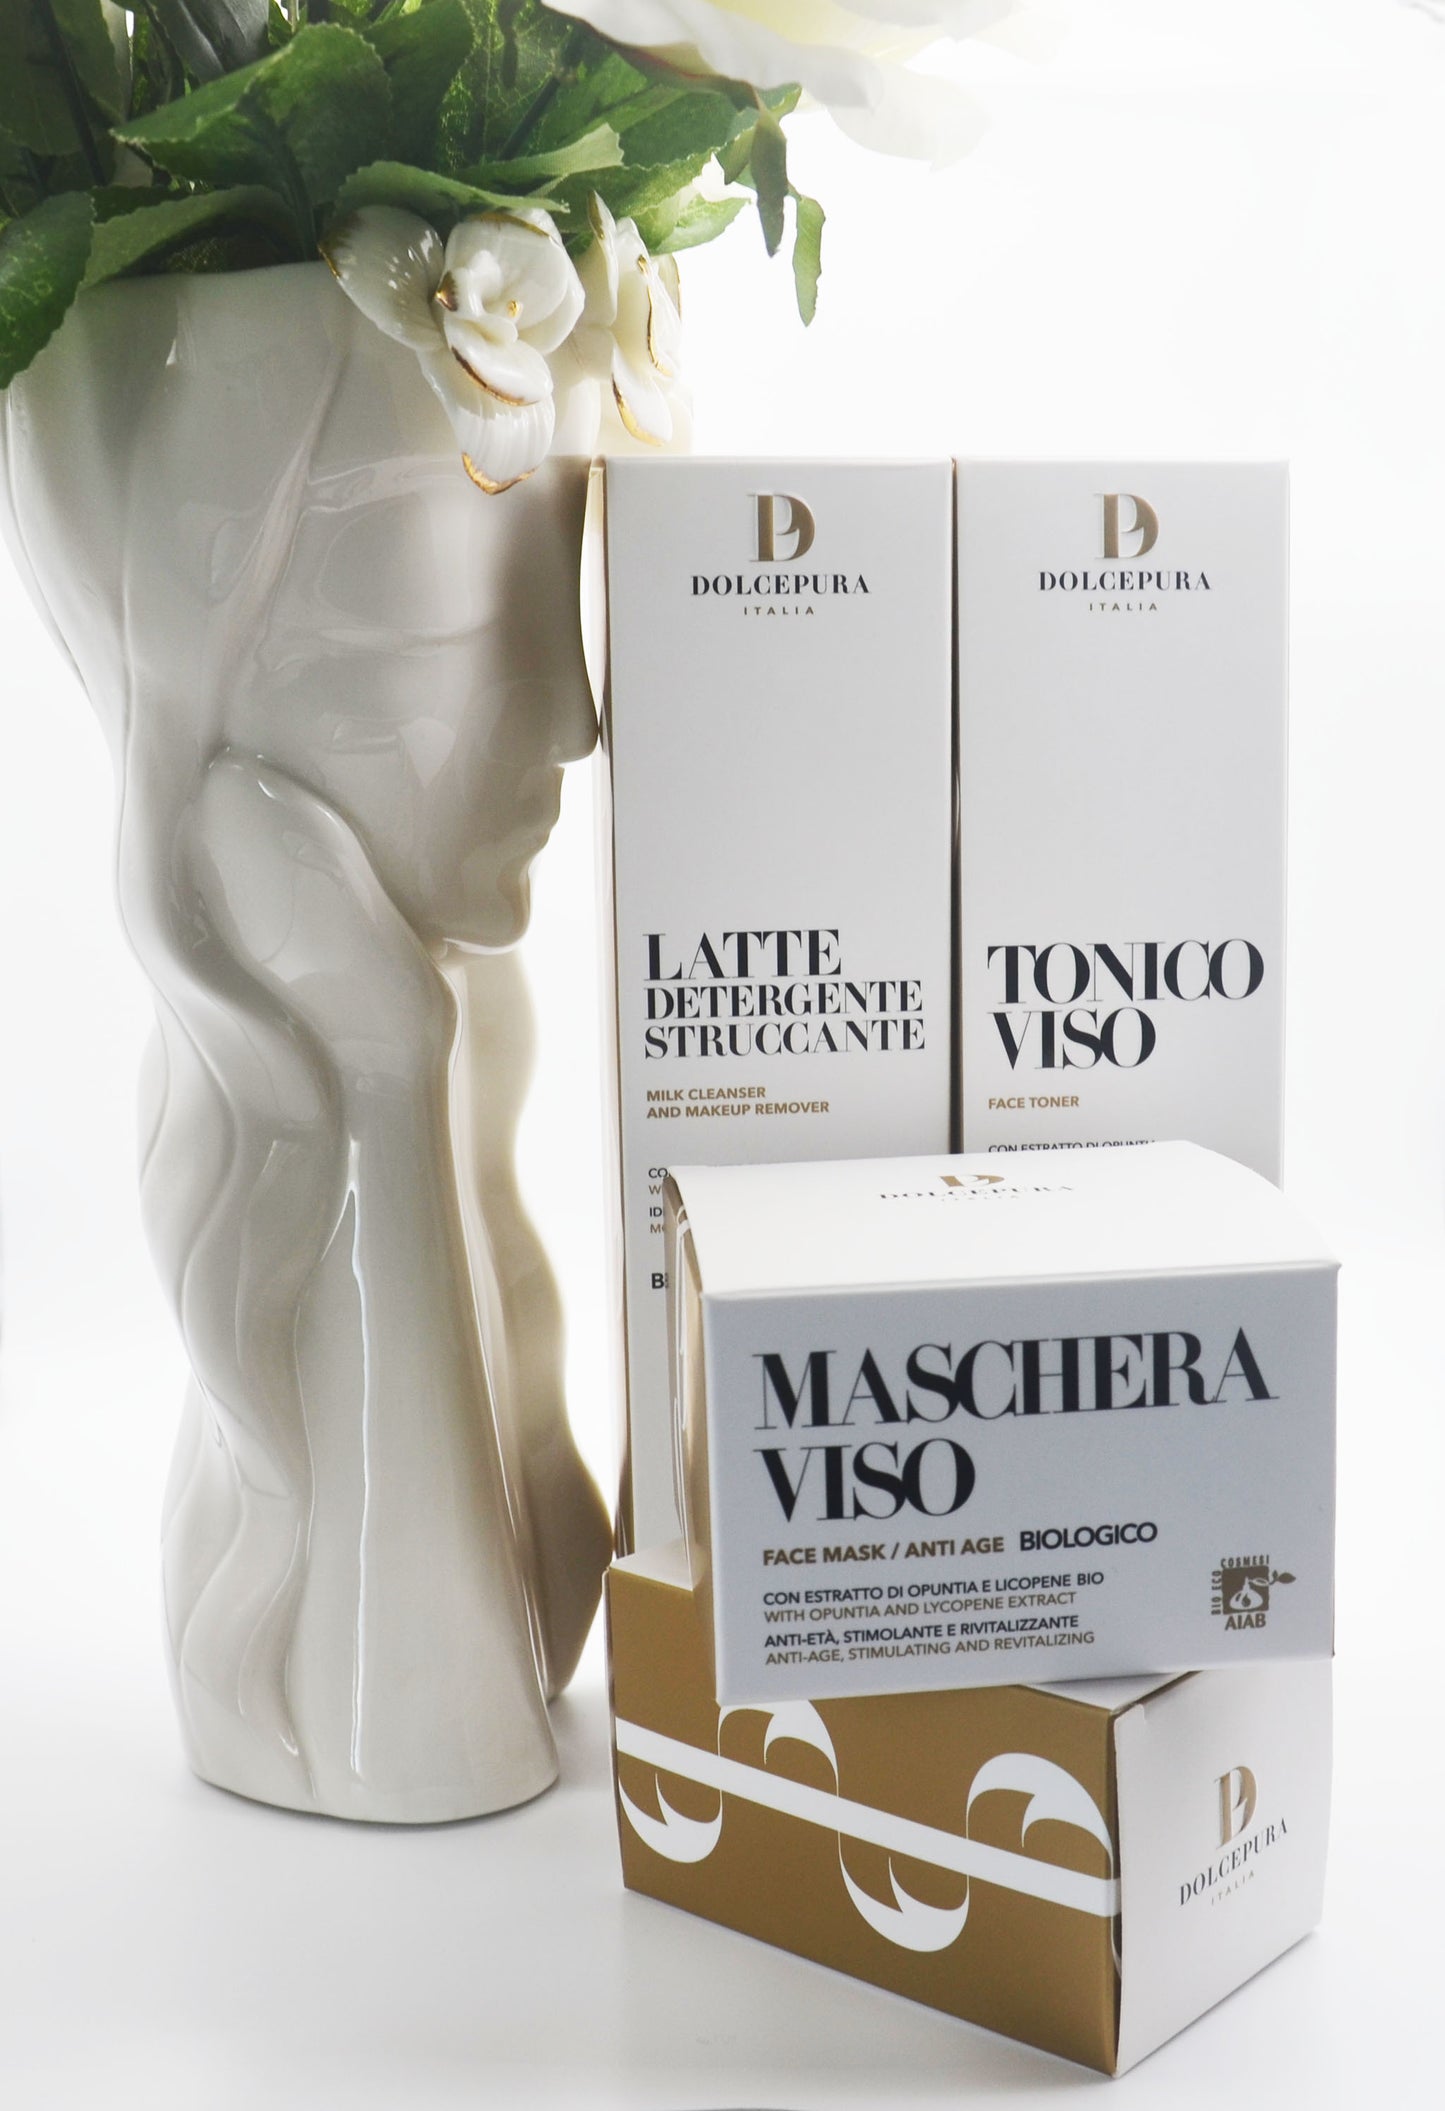 Італійський косметичний набір "MERAVIGLIA" для ОСОБИ (молочко для очищення, тонік і маска) опунція та сертифікований органічний лікопін малого виробництва. Зроблено в Італії. Рослинного походження, всі типи шкіри